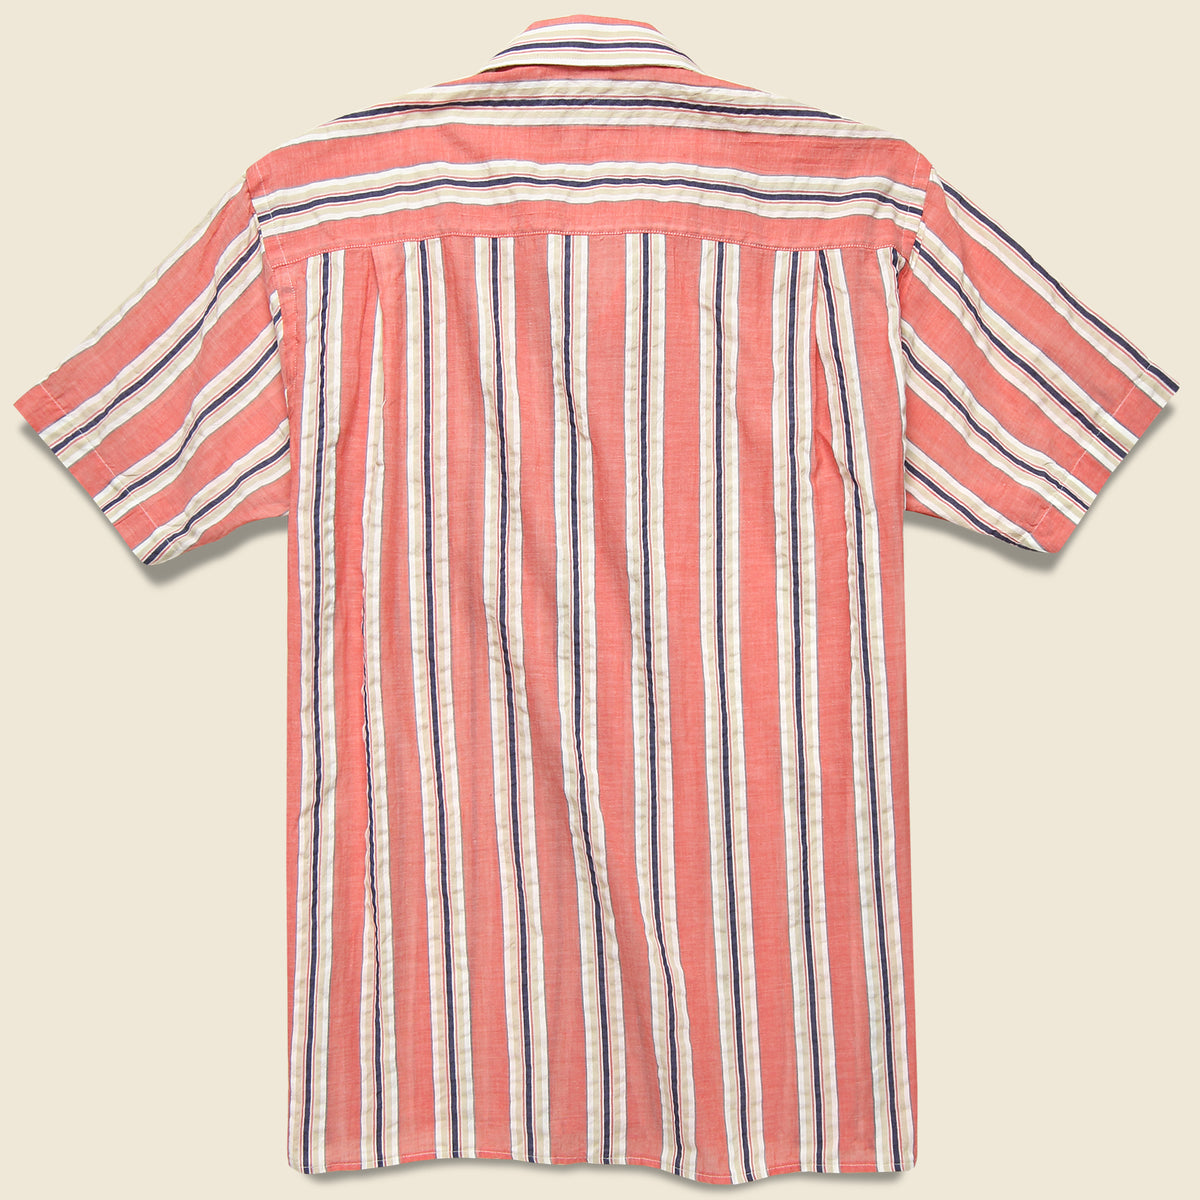 Awning Stripe Camp Shirt - Pink